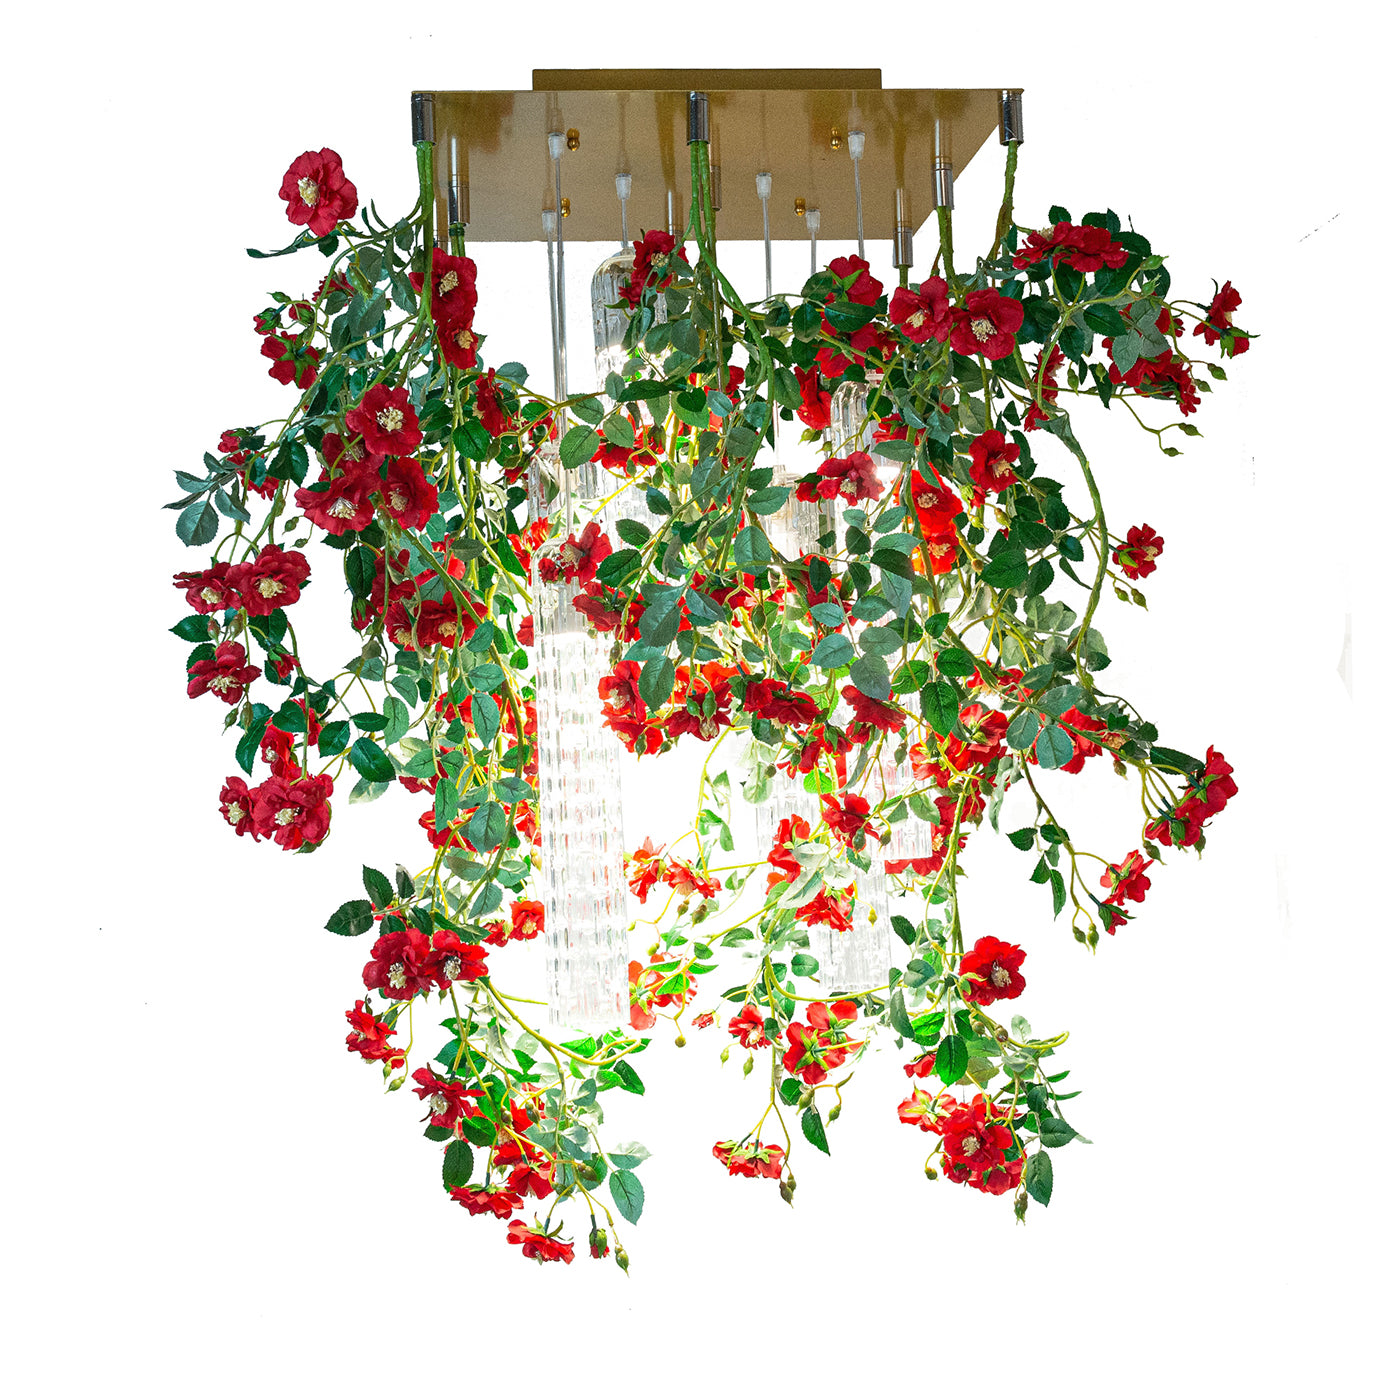 Flower Power Wild Red Roses Quadratischer Kronleuchter - Hauptansicht